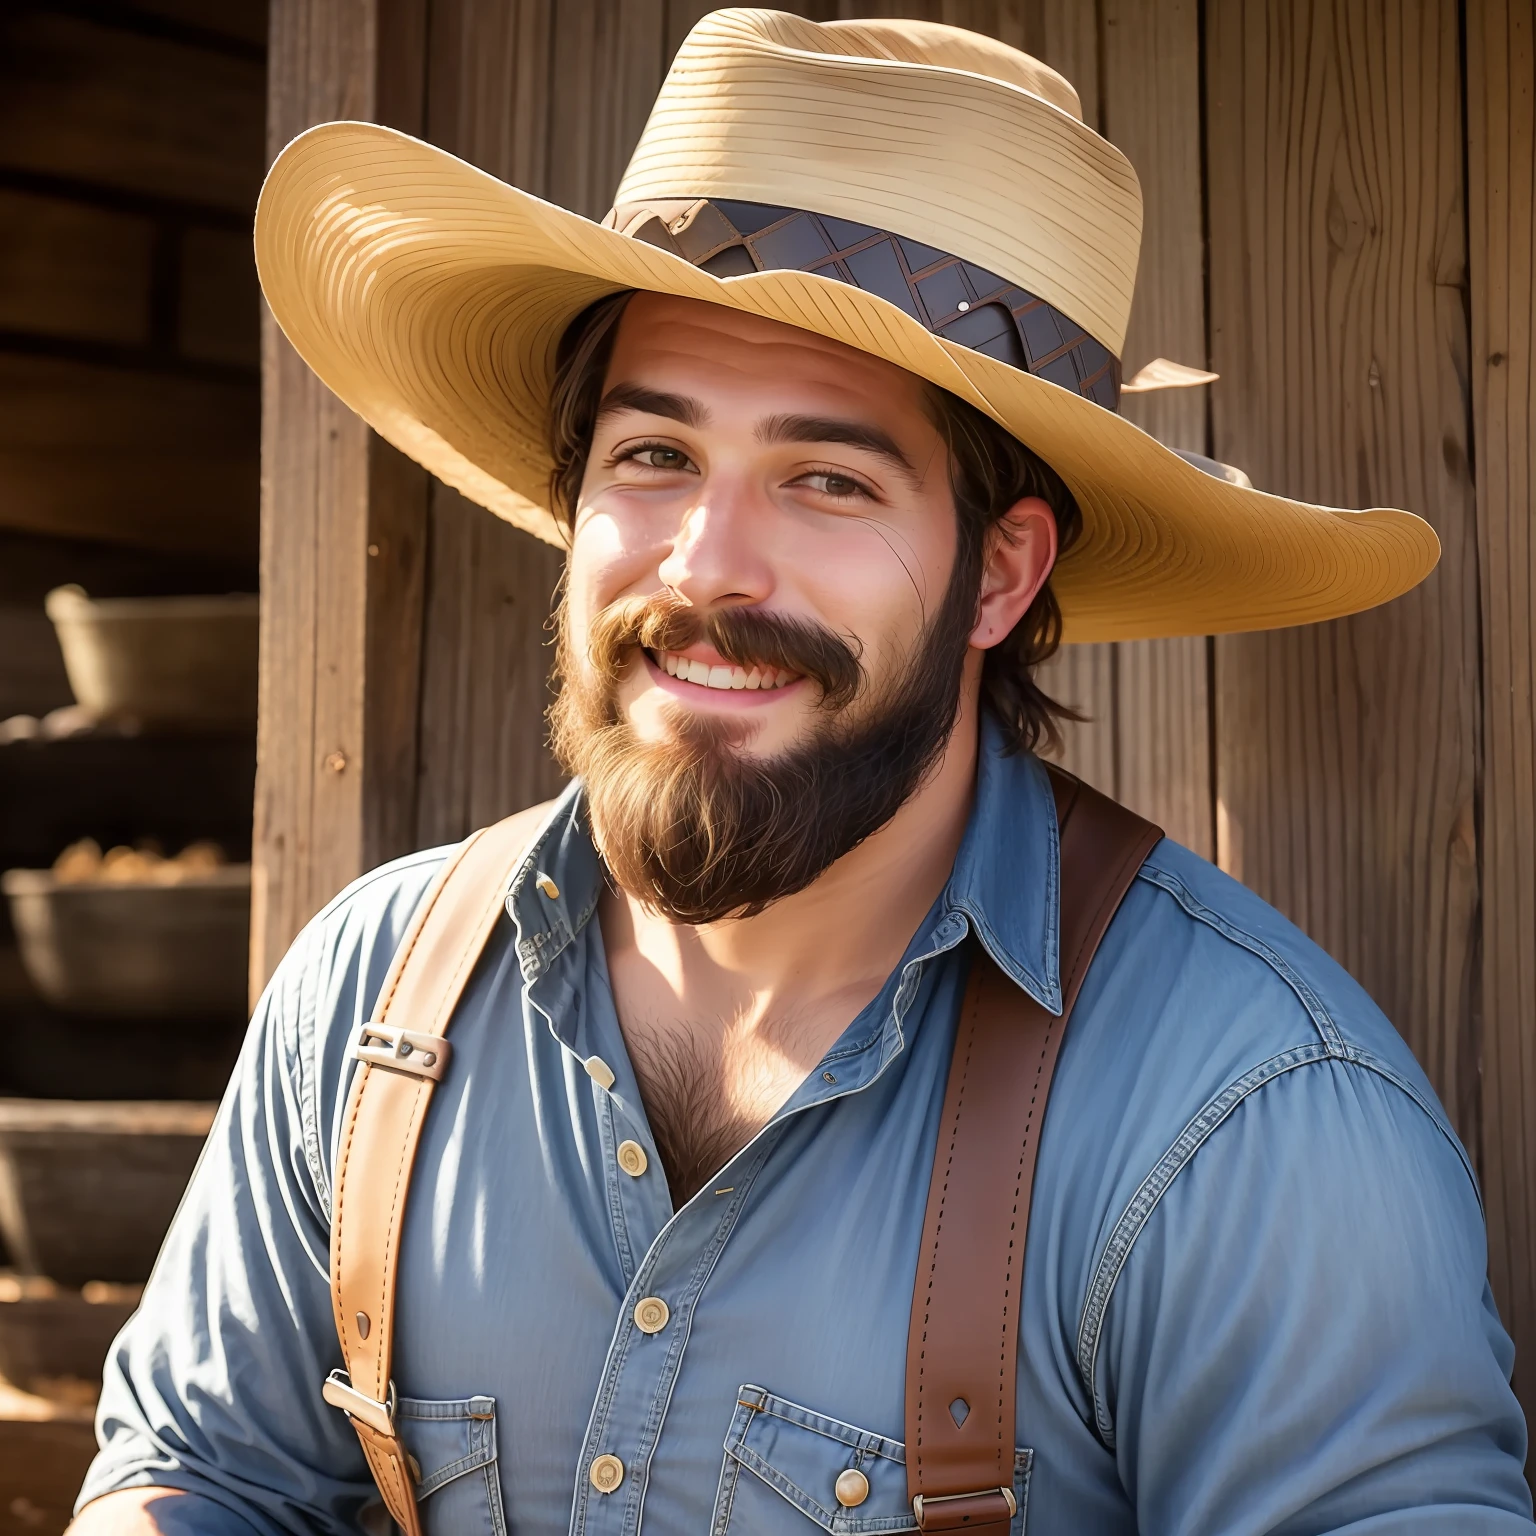 A fotorealistisch portrait of a young man in a rancher clothes', ein hellbraunes Hemd, Hosenträger und Blue Jeans trägt einen Rancher Hut, Hyperrealistisch, fotorealistisch, voluminöses Naturhaar, natürliches Gesicht, Schnurrbart, Koteletten, , hyperdetailliert. Glücklich